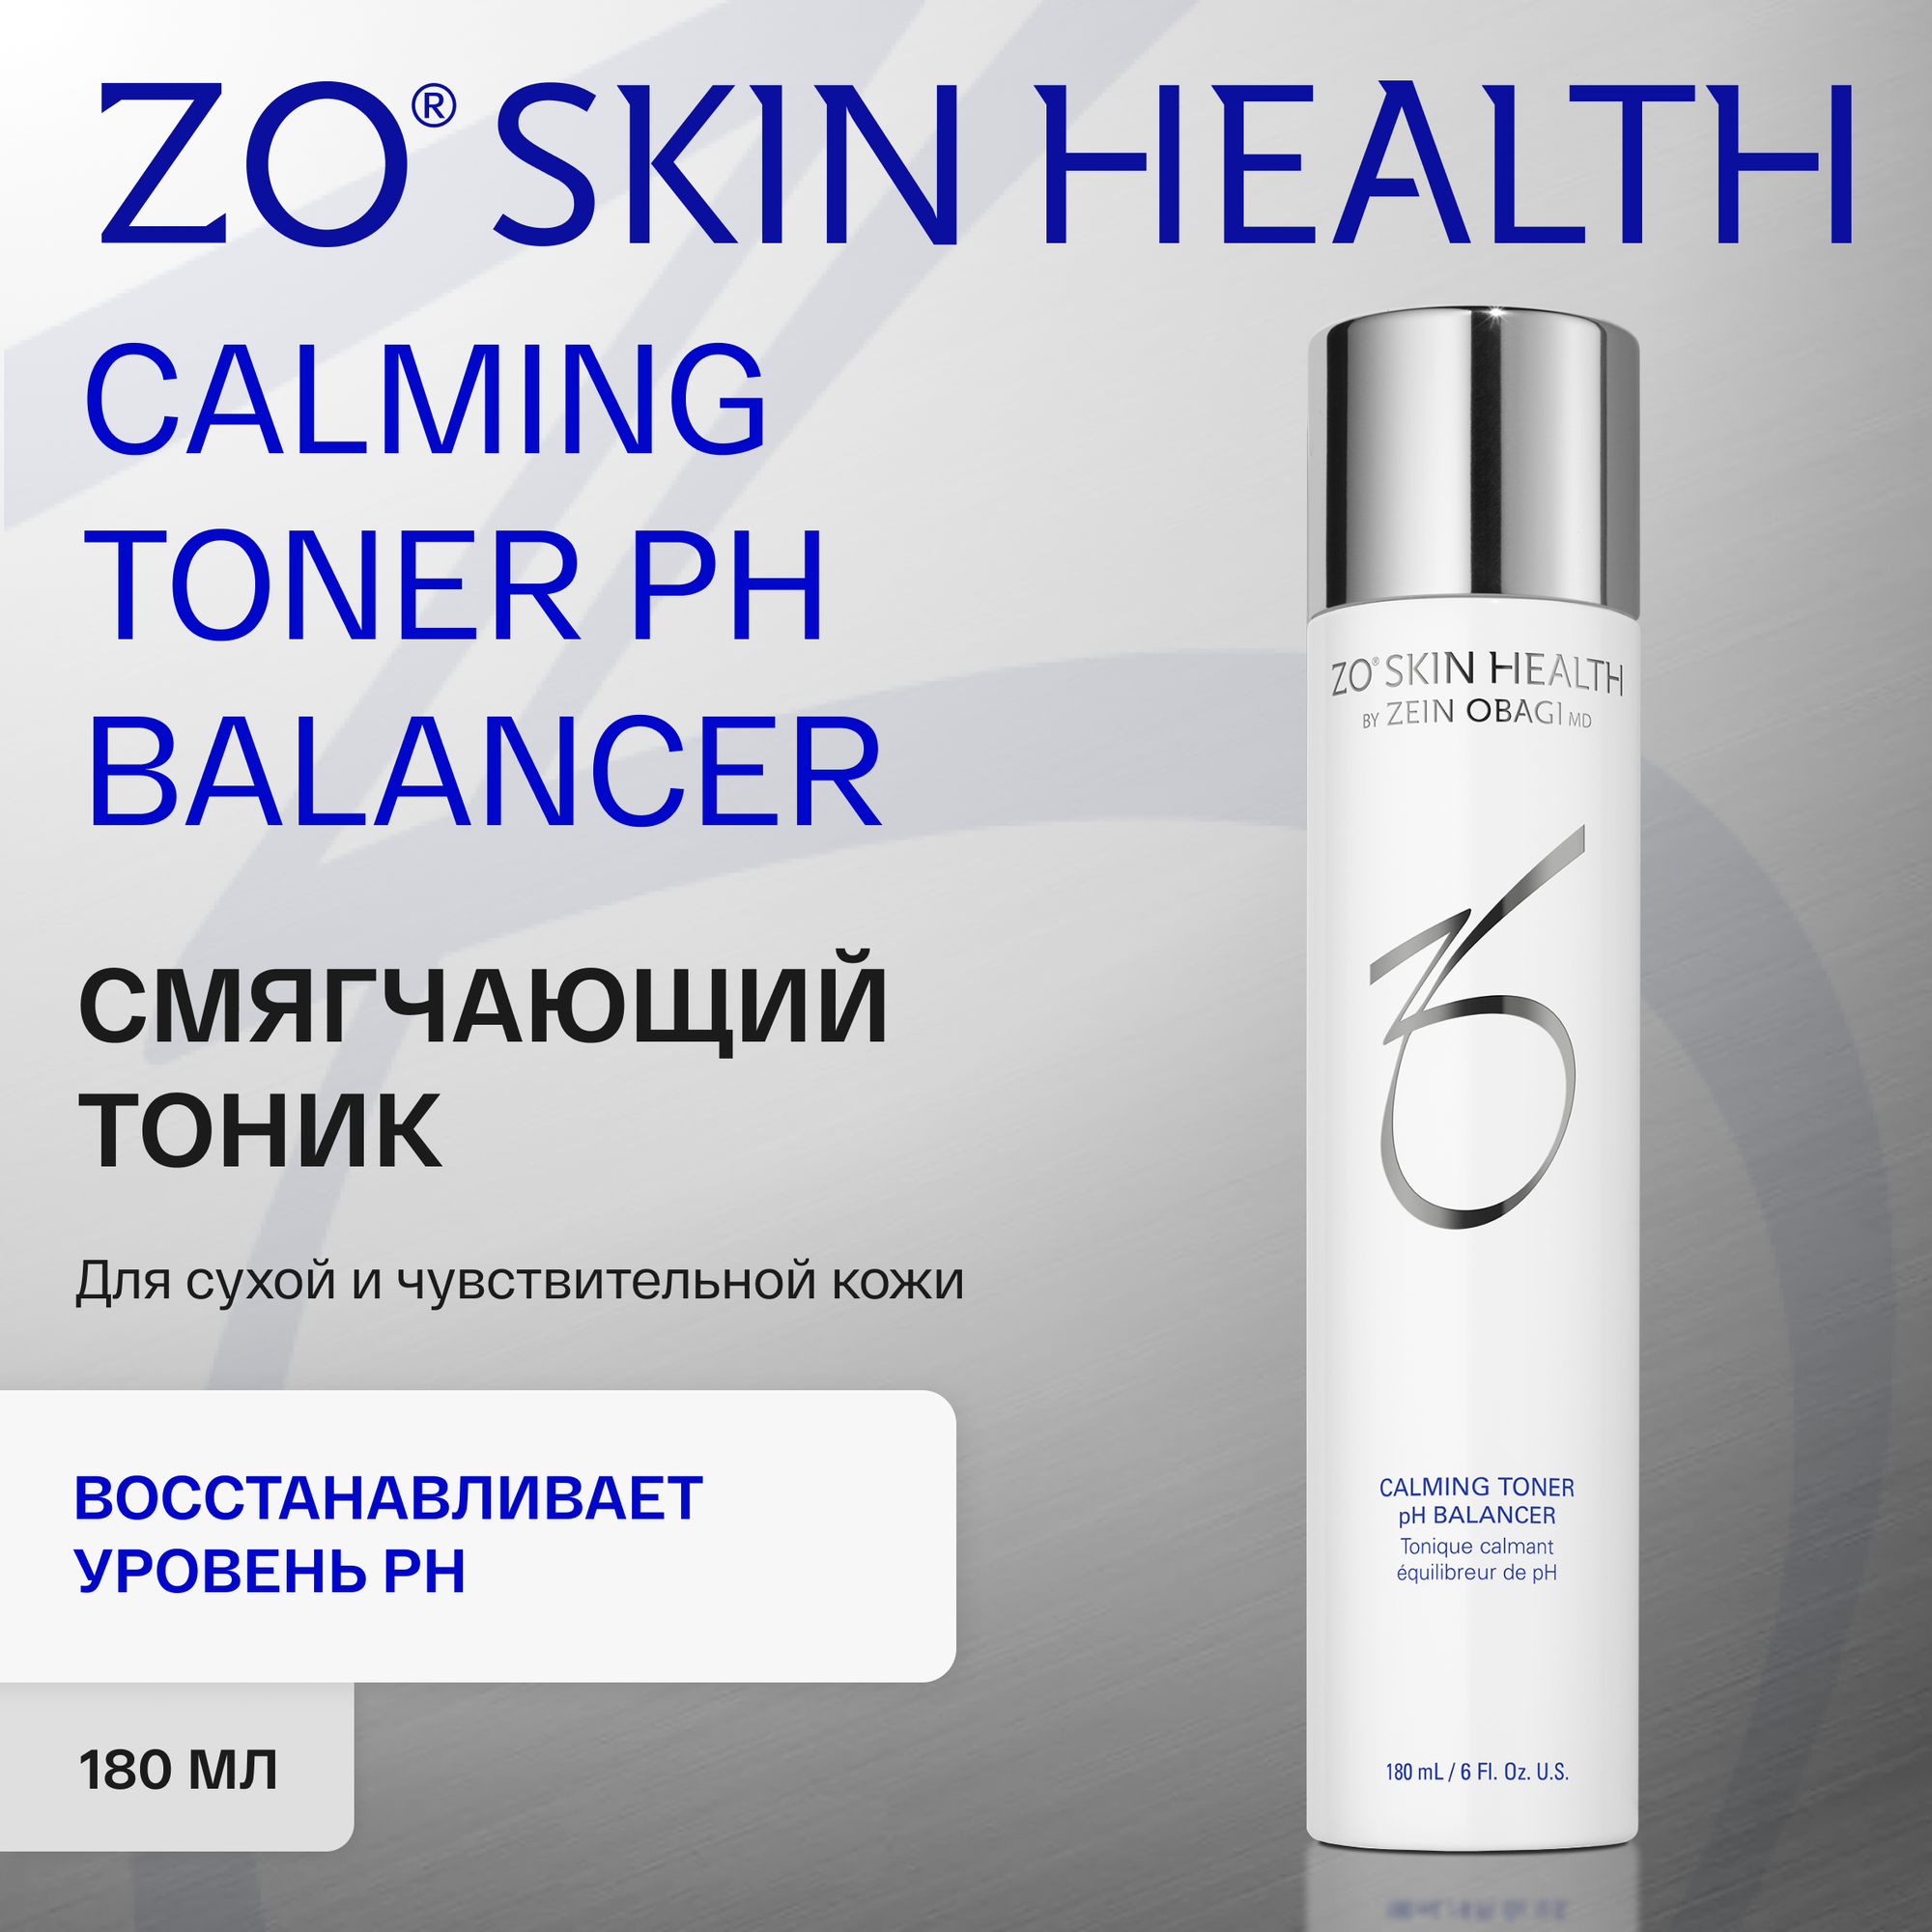 Тоник Zo Skin Health by Zein Obagi Calming toner pH, успокаивающий, для всех типов кожи, 180 мл